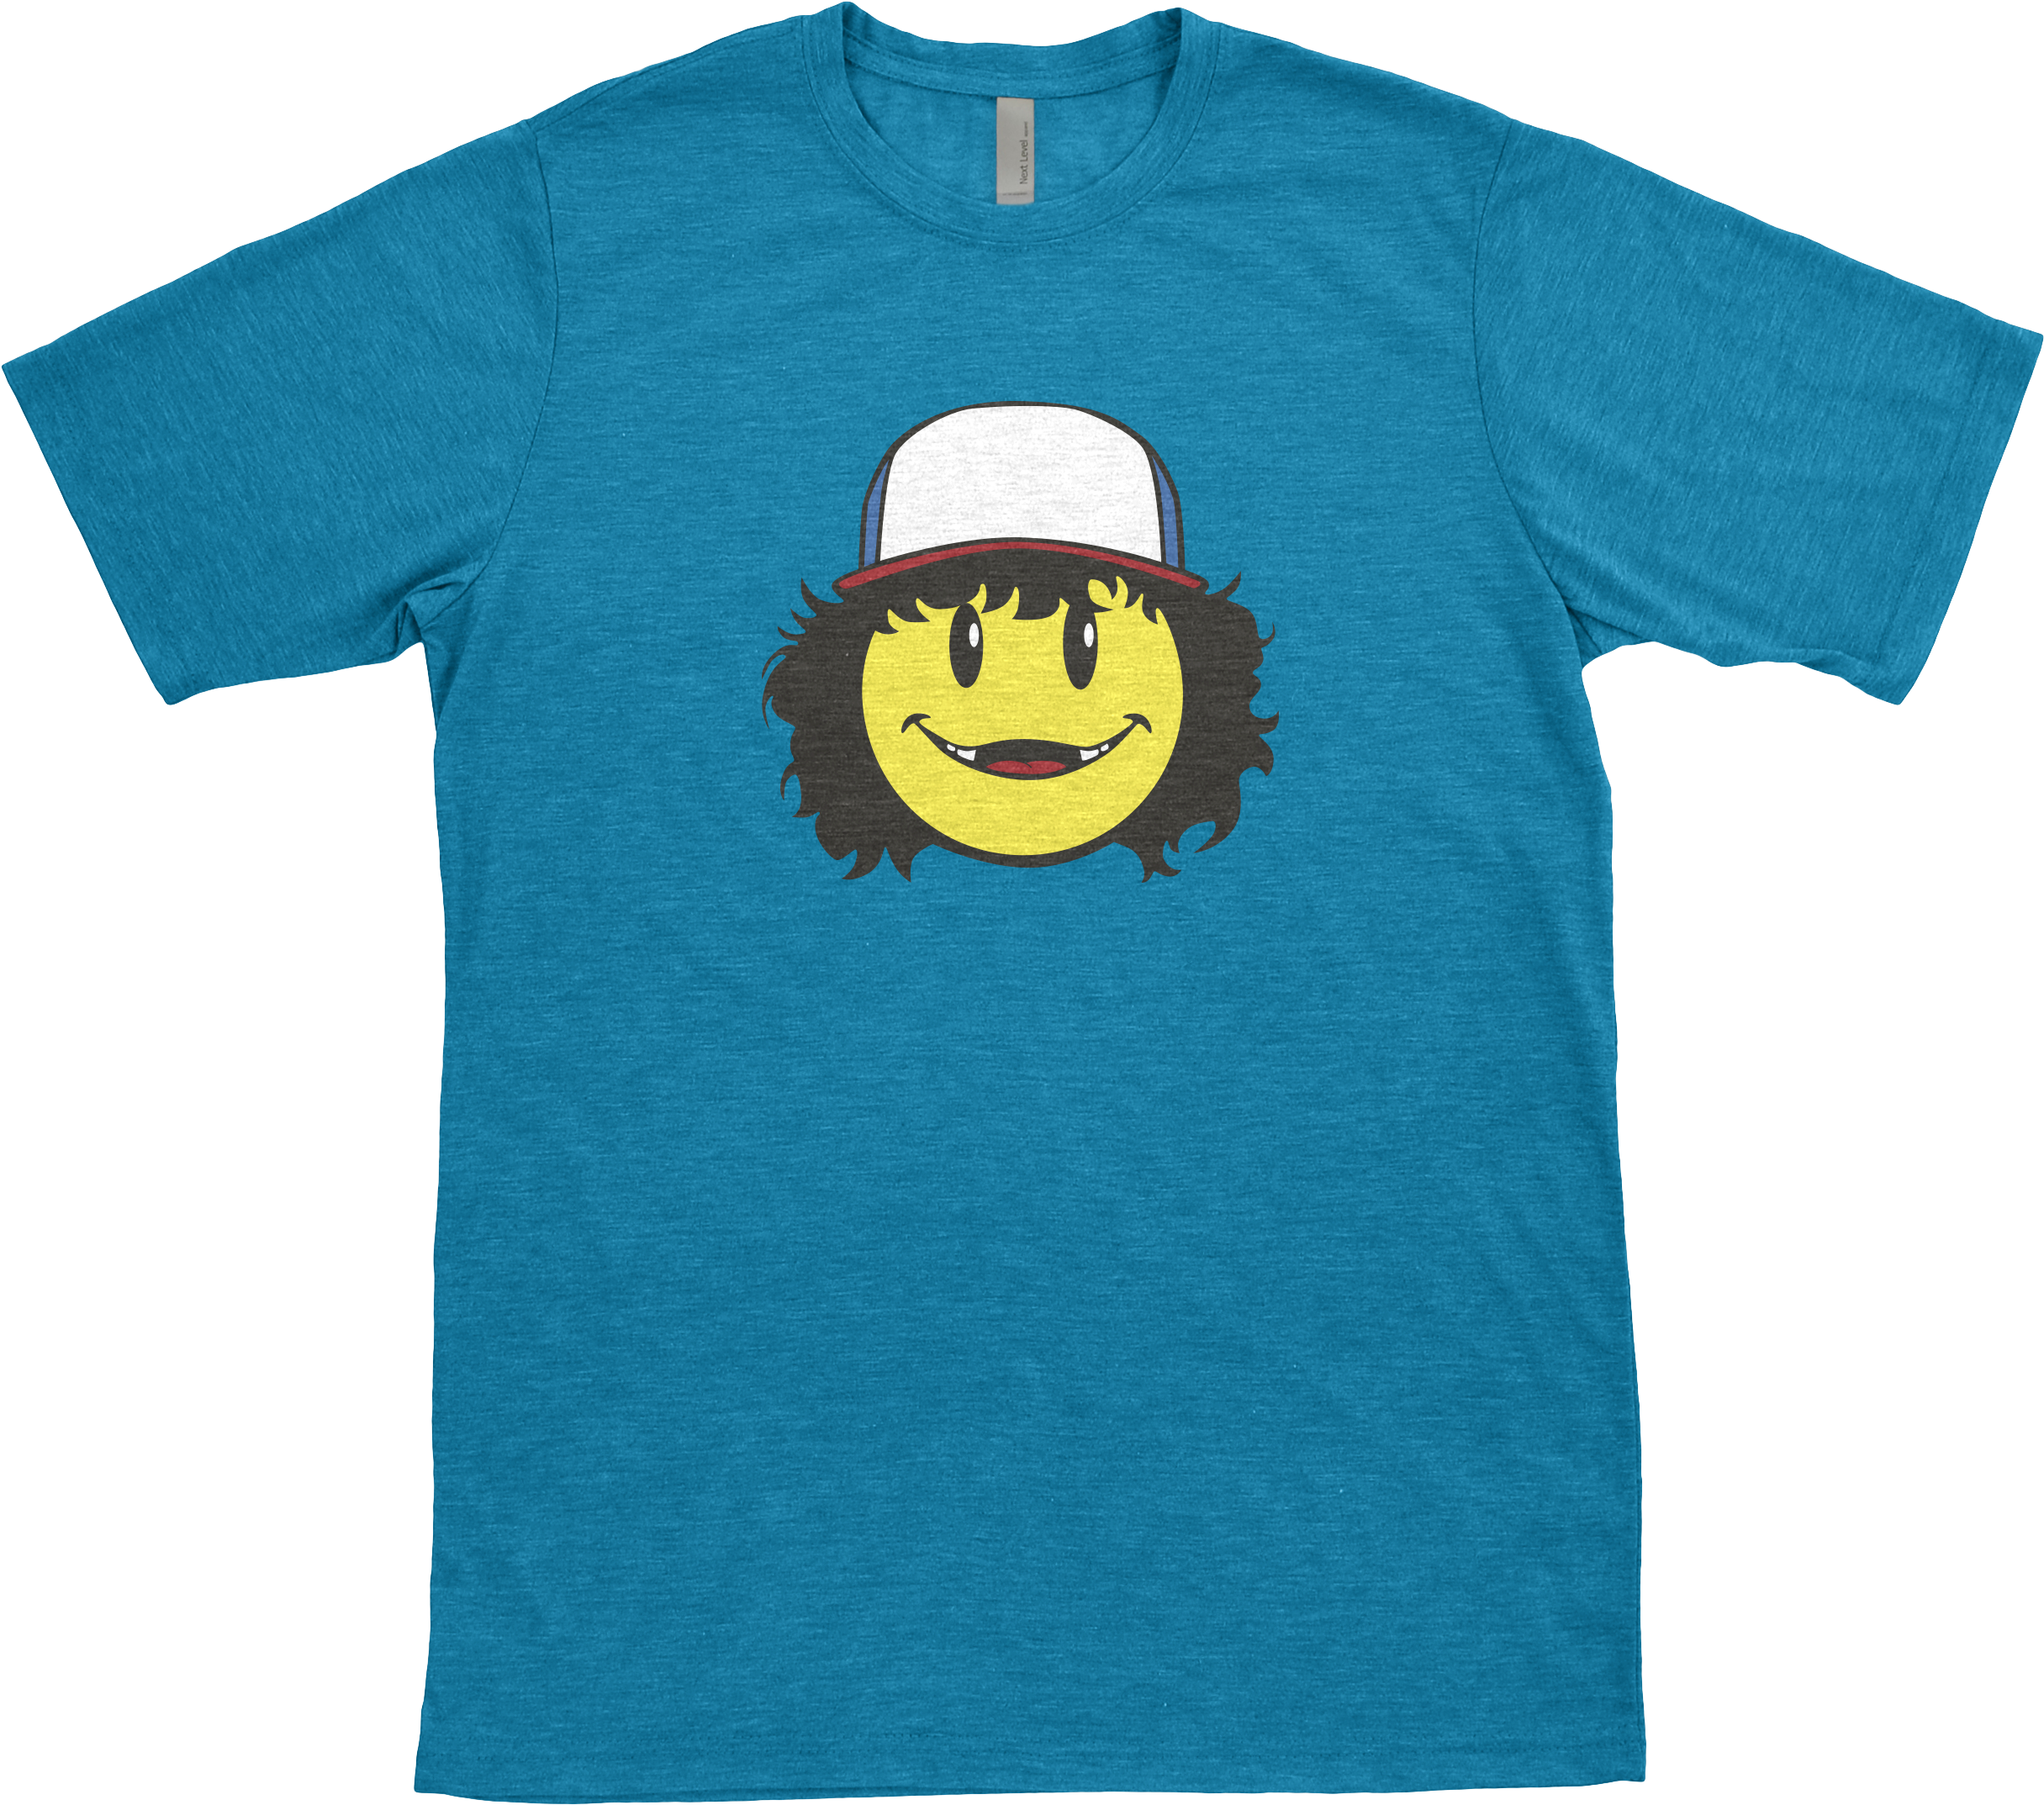 Dustin T-shirt - Ccd Smiles T Shirt (2600x2600)